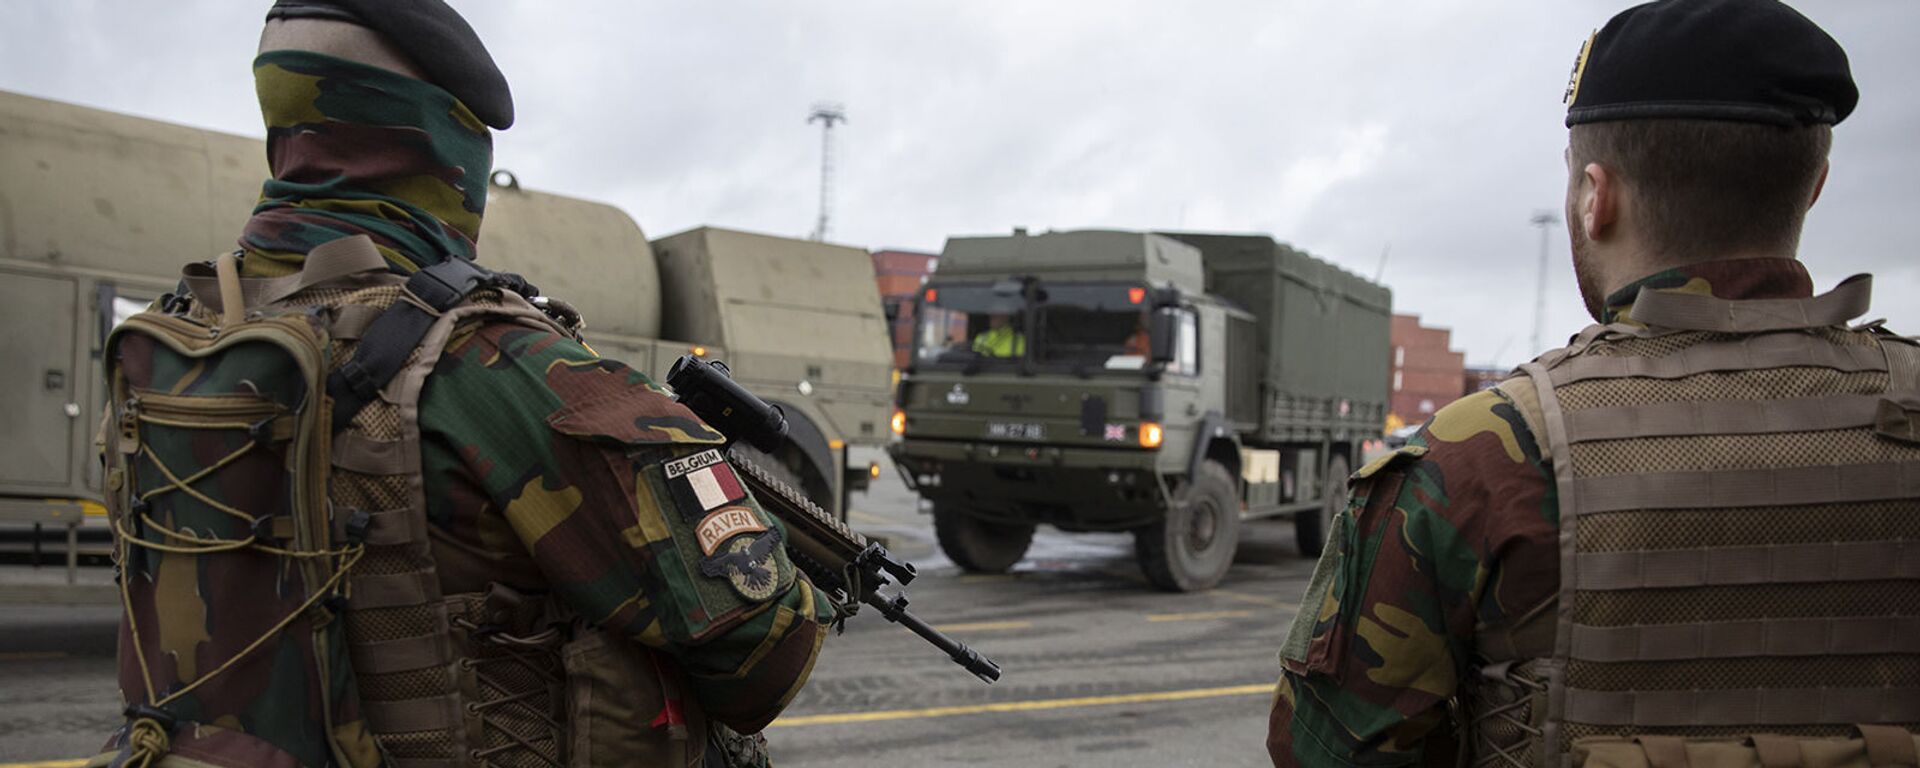 Бельгийские солдаты патрулируют во временной военной зоне во время учений Defender-Europe 2020 (3 февраля 2020). Антверпен - Sputnik Армения, 1920, 22.03.2021